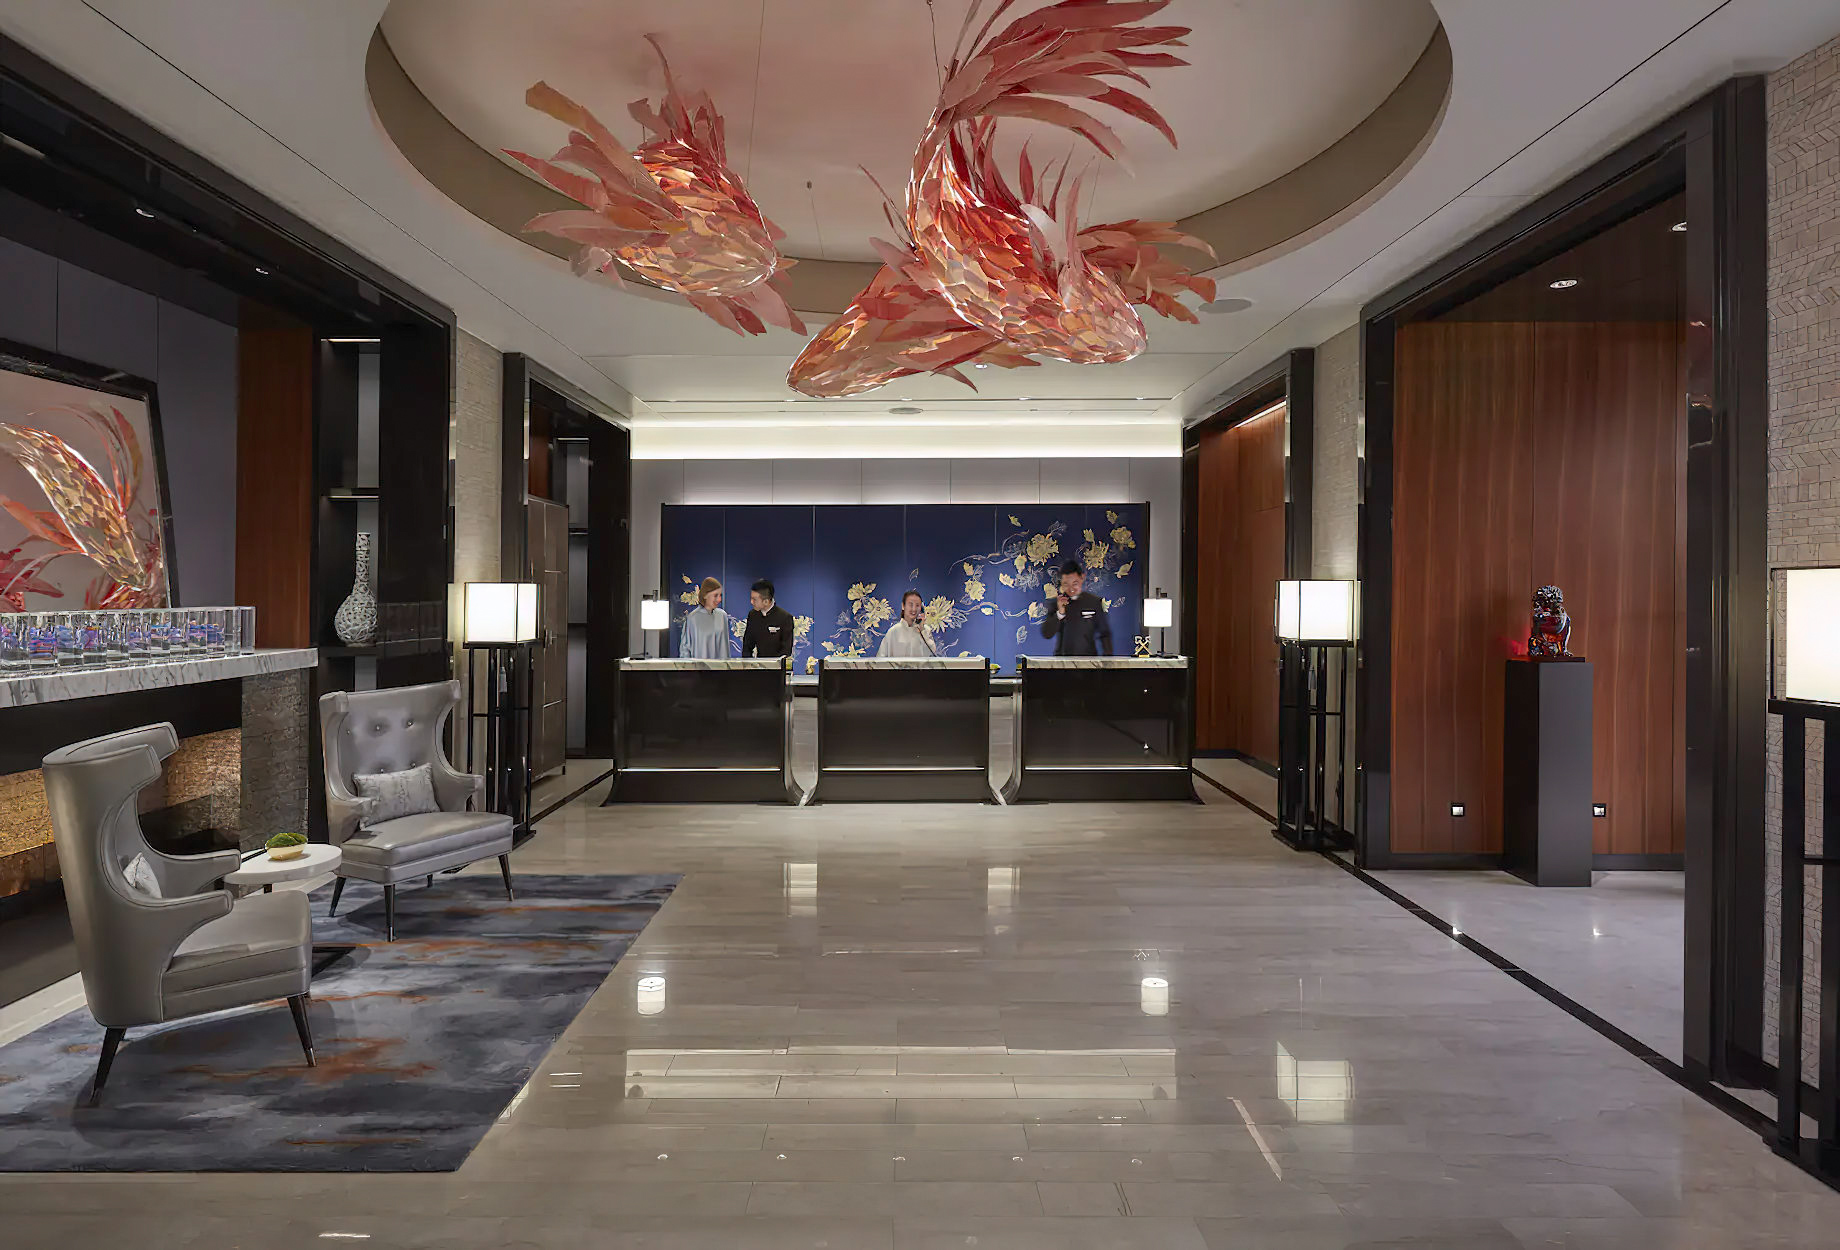 Mandarin Oriental Wangfujing, Beijing Hotel – Beijing, China – Lobby Reception